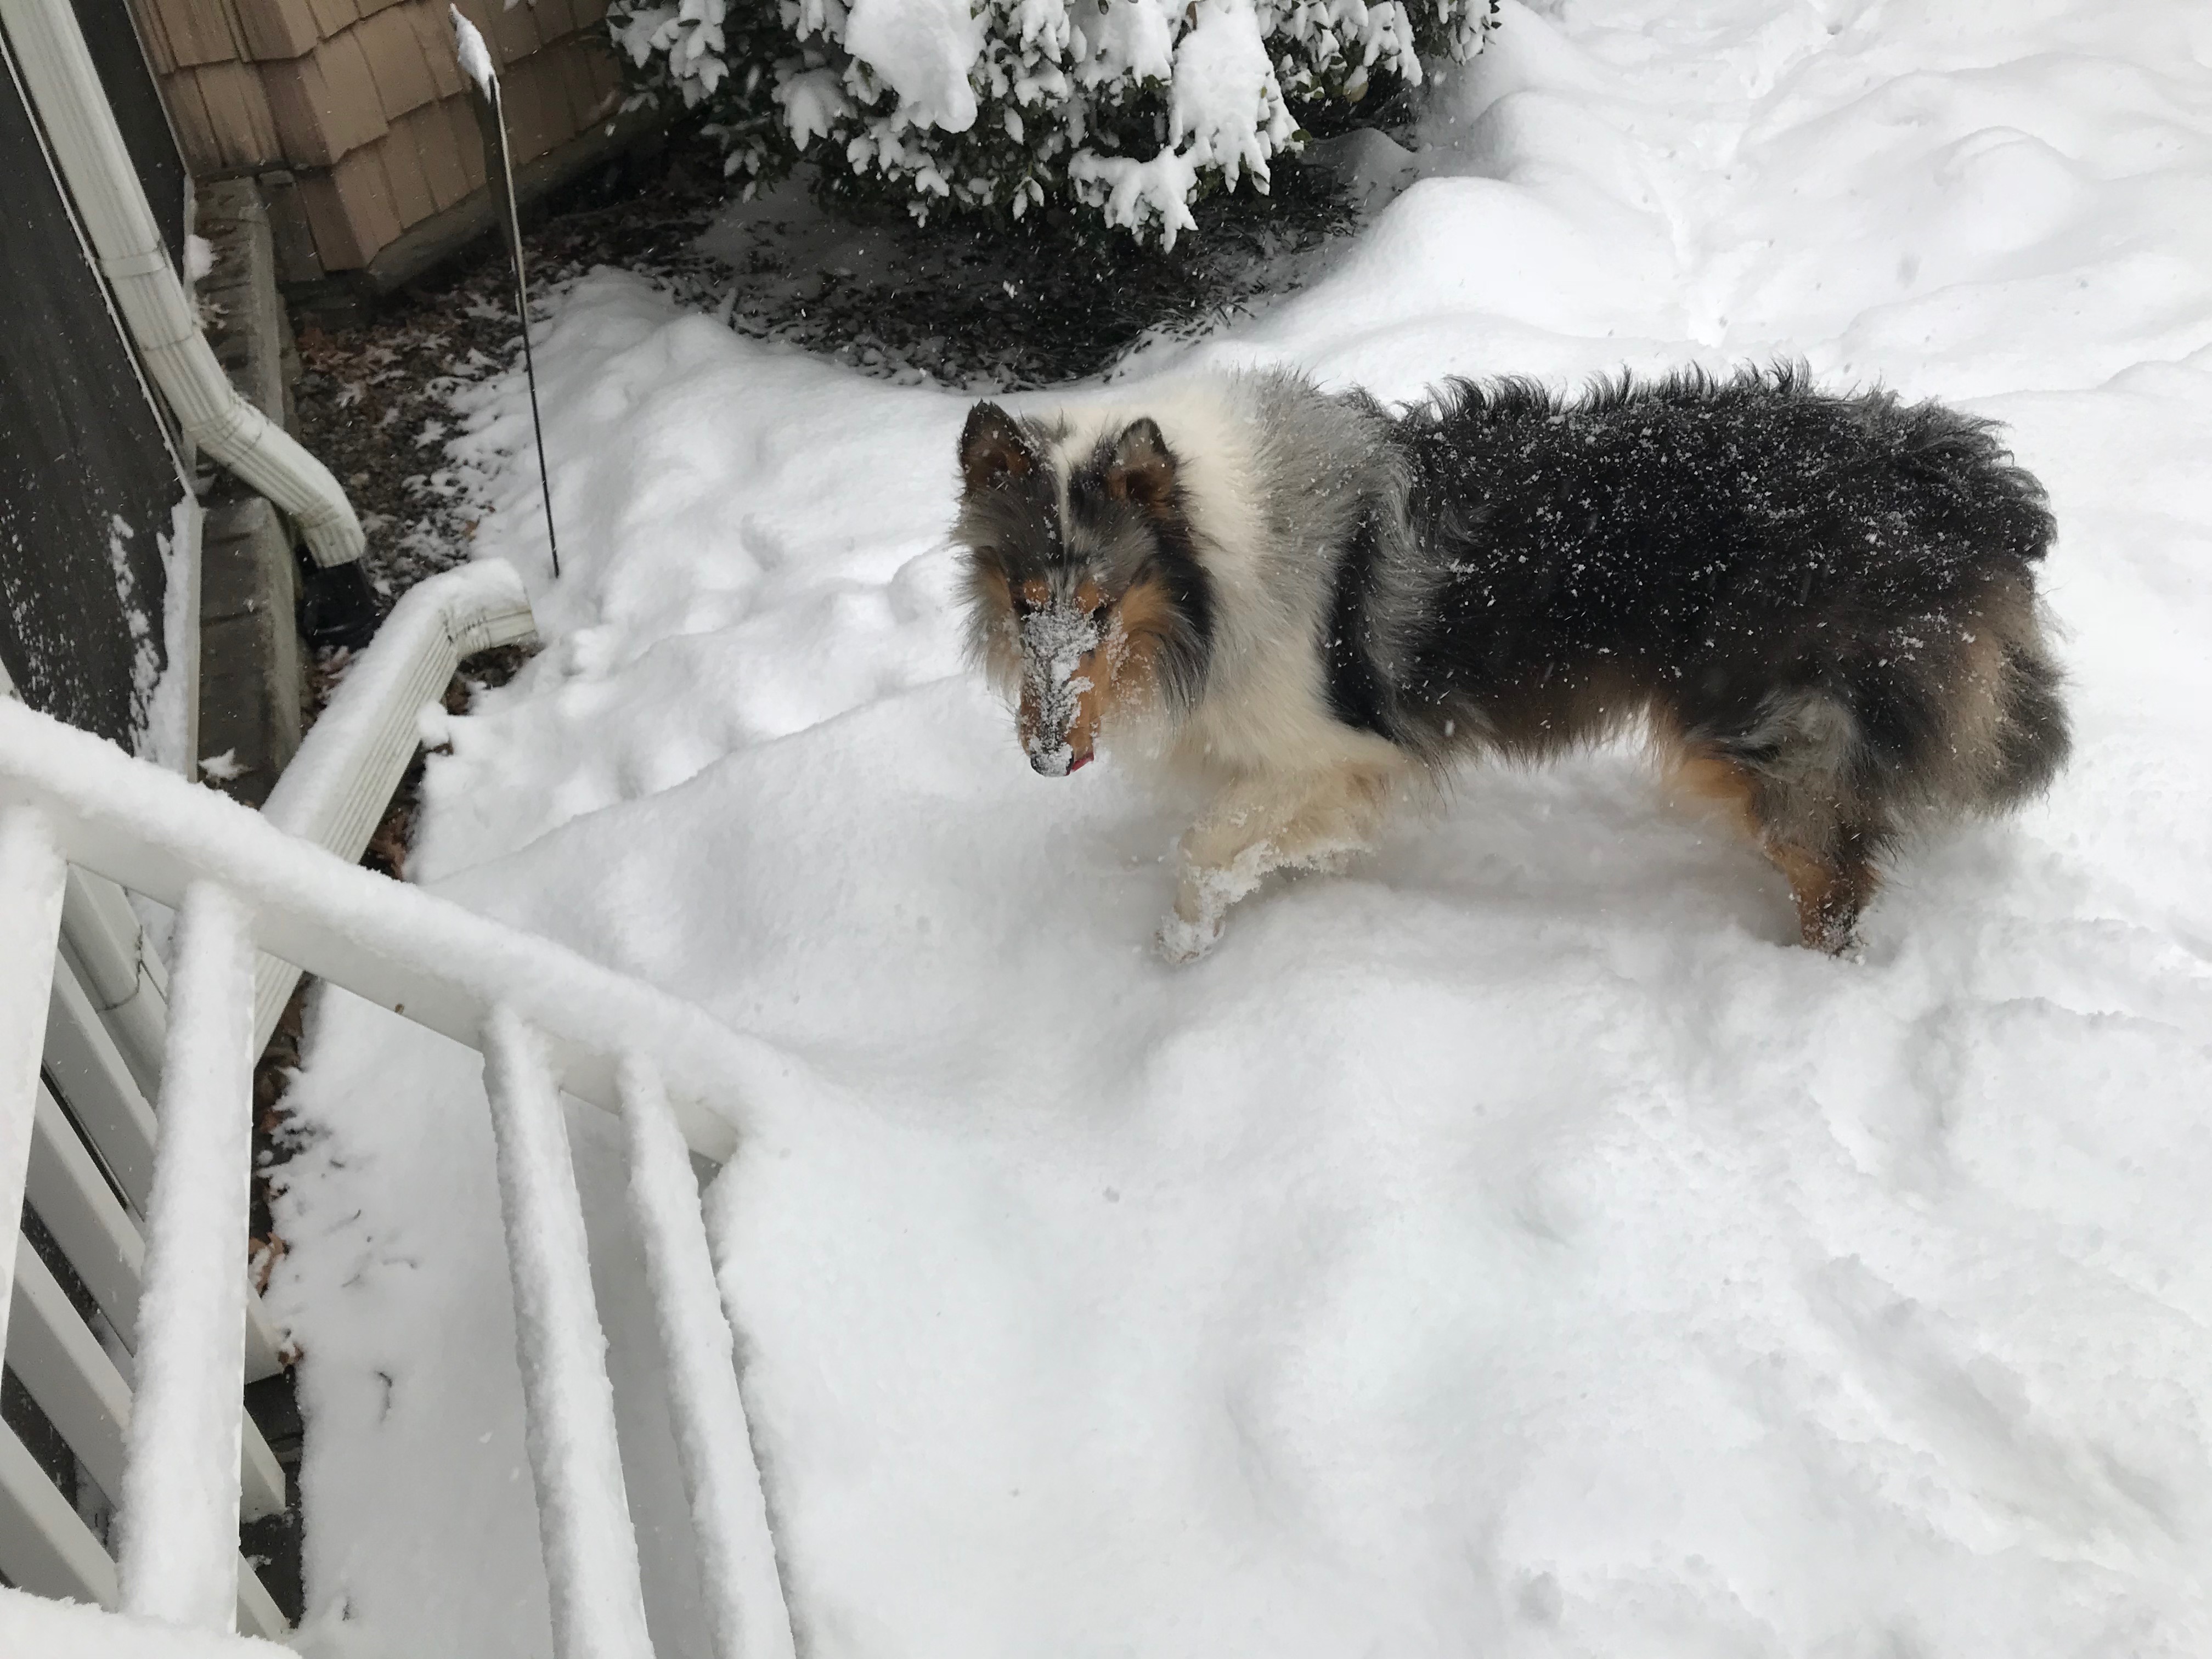 Daisy lovin the snow